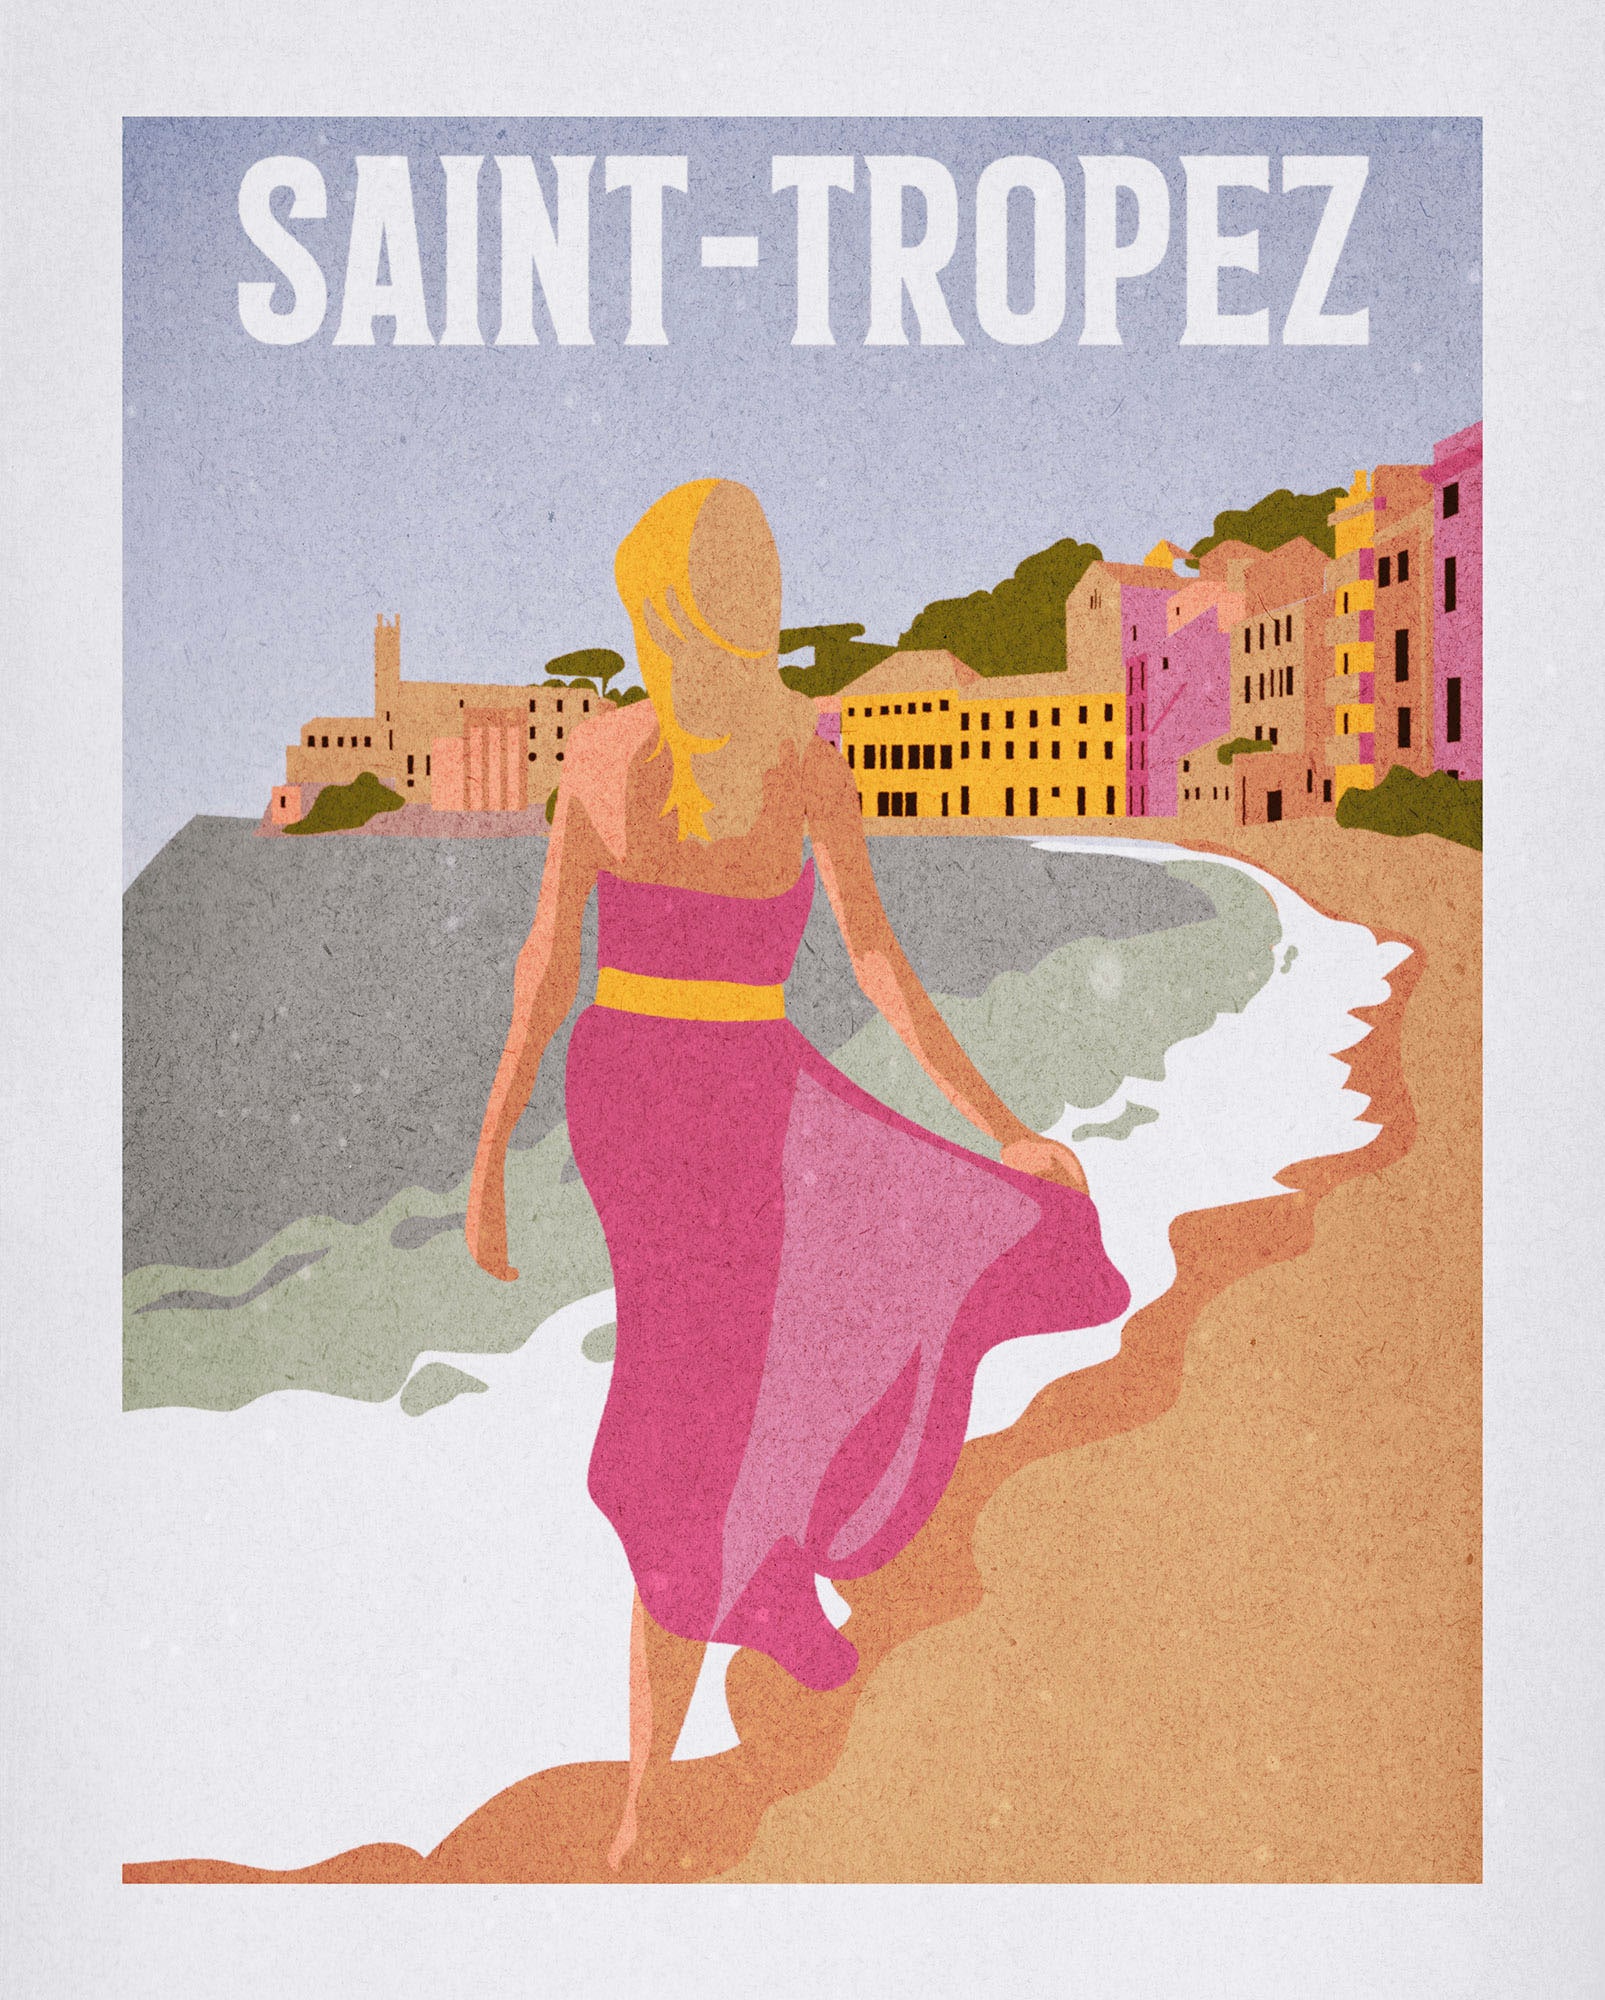 Komar Wandbild »Vintage Travel Saint-Tropez«, (1 St.), Deutsches Premium-Poster Fotopapier mit seidenmatter Oberfläche und hoher Lichtbeständigkeit. Für fotorealistische Drucke mit gestochen scharfen Details und hervorragender Farbbrillanz.